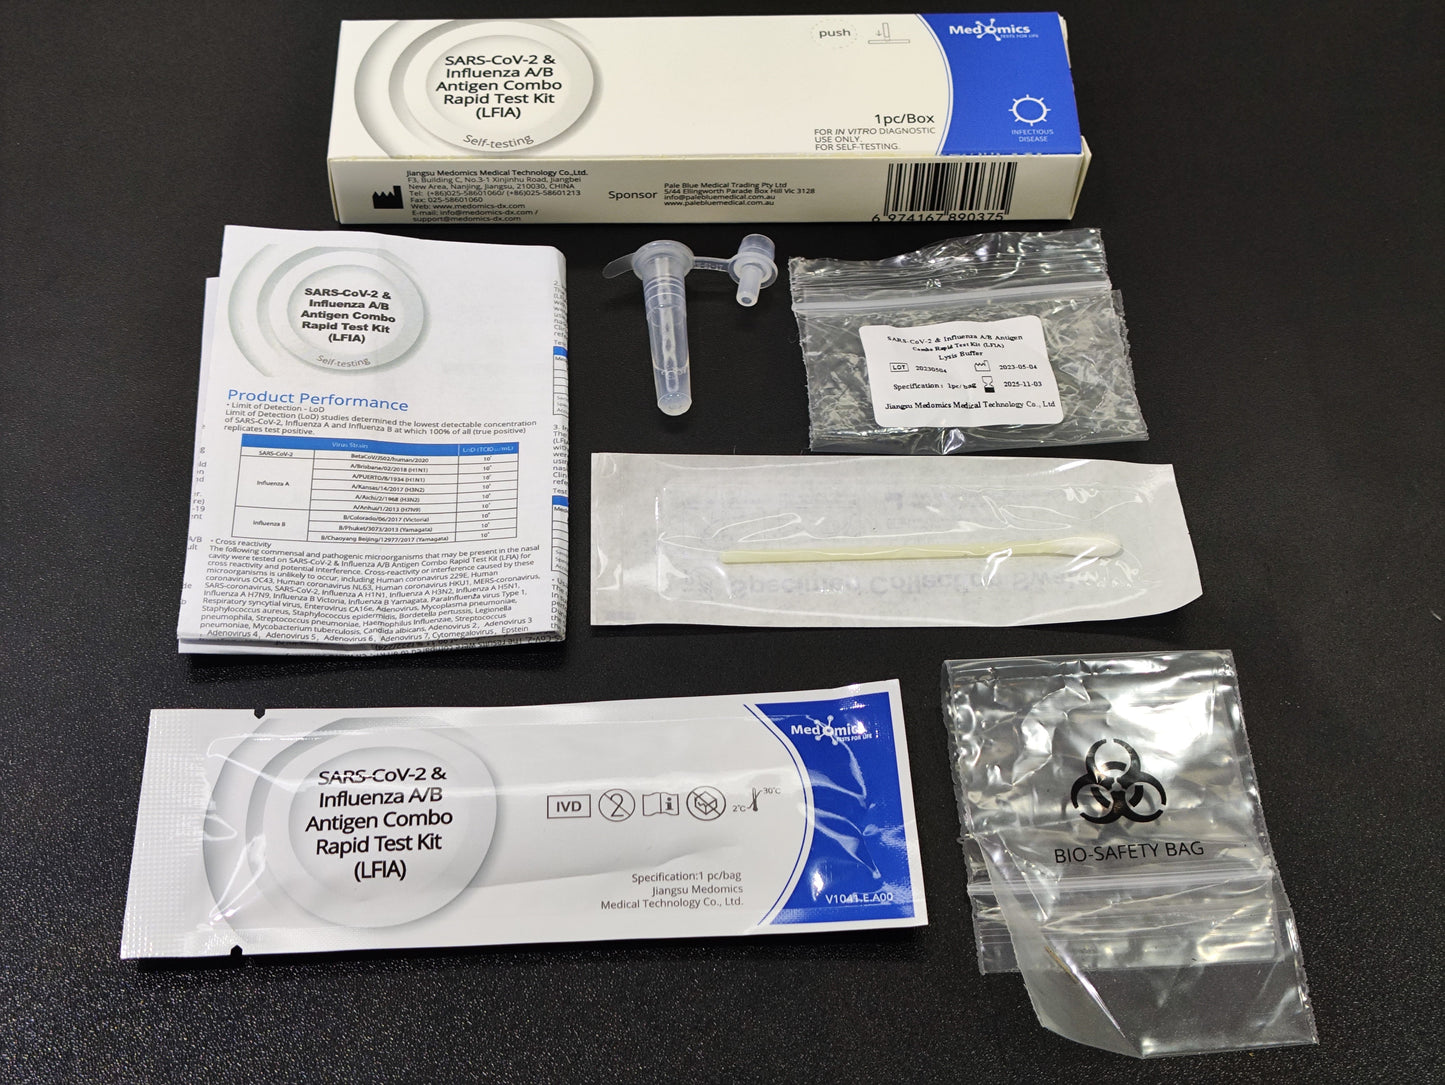 572X Medomics, SARS-CoVid-2 / Influenza A & B Antigen Combination Rapid Test Kit (LFIA)-Single Pack